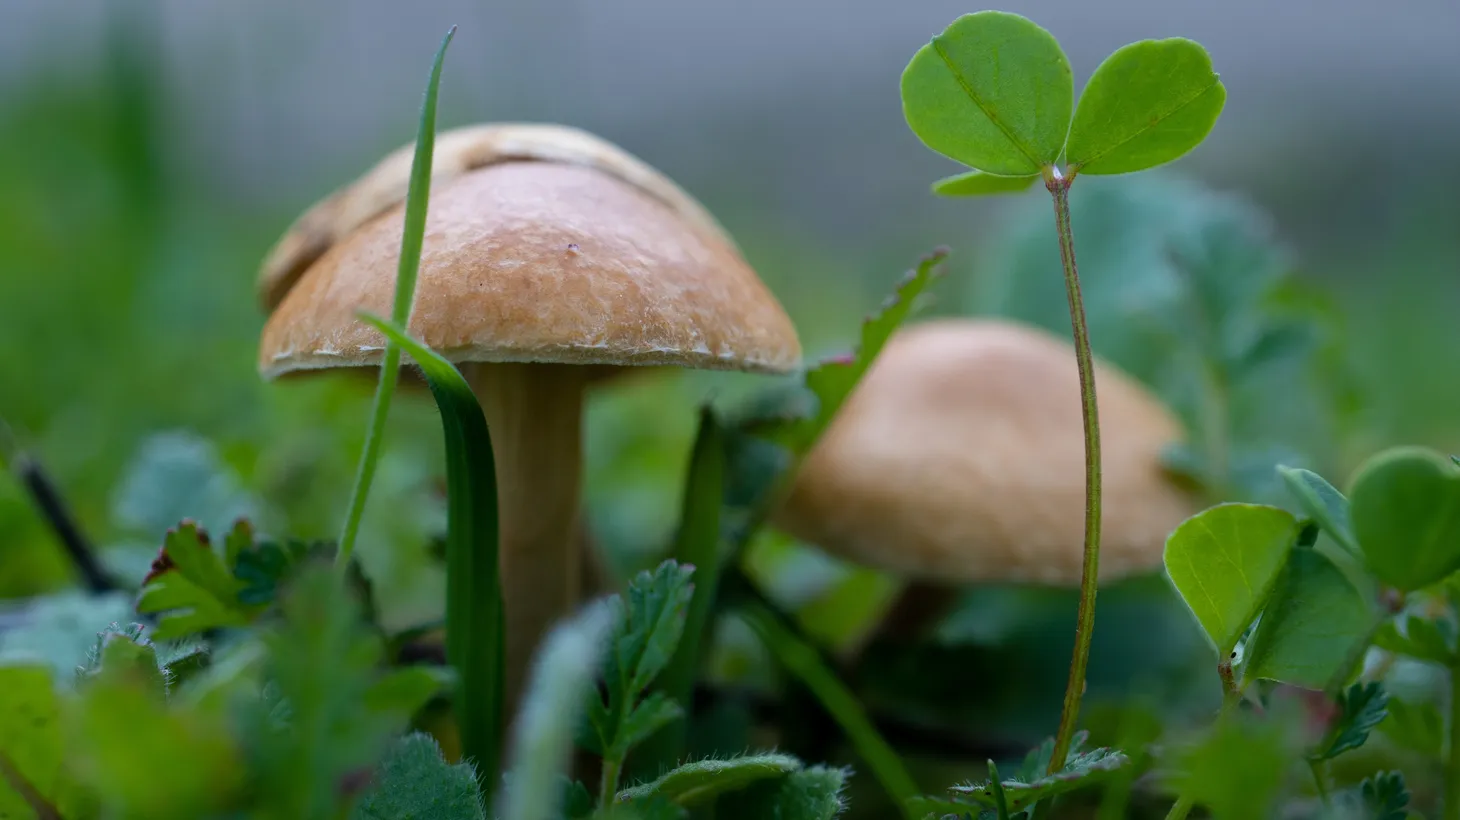 Wild mushrooms grow in Los Angeles.